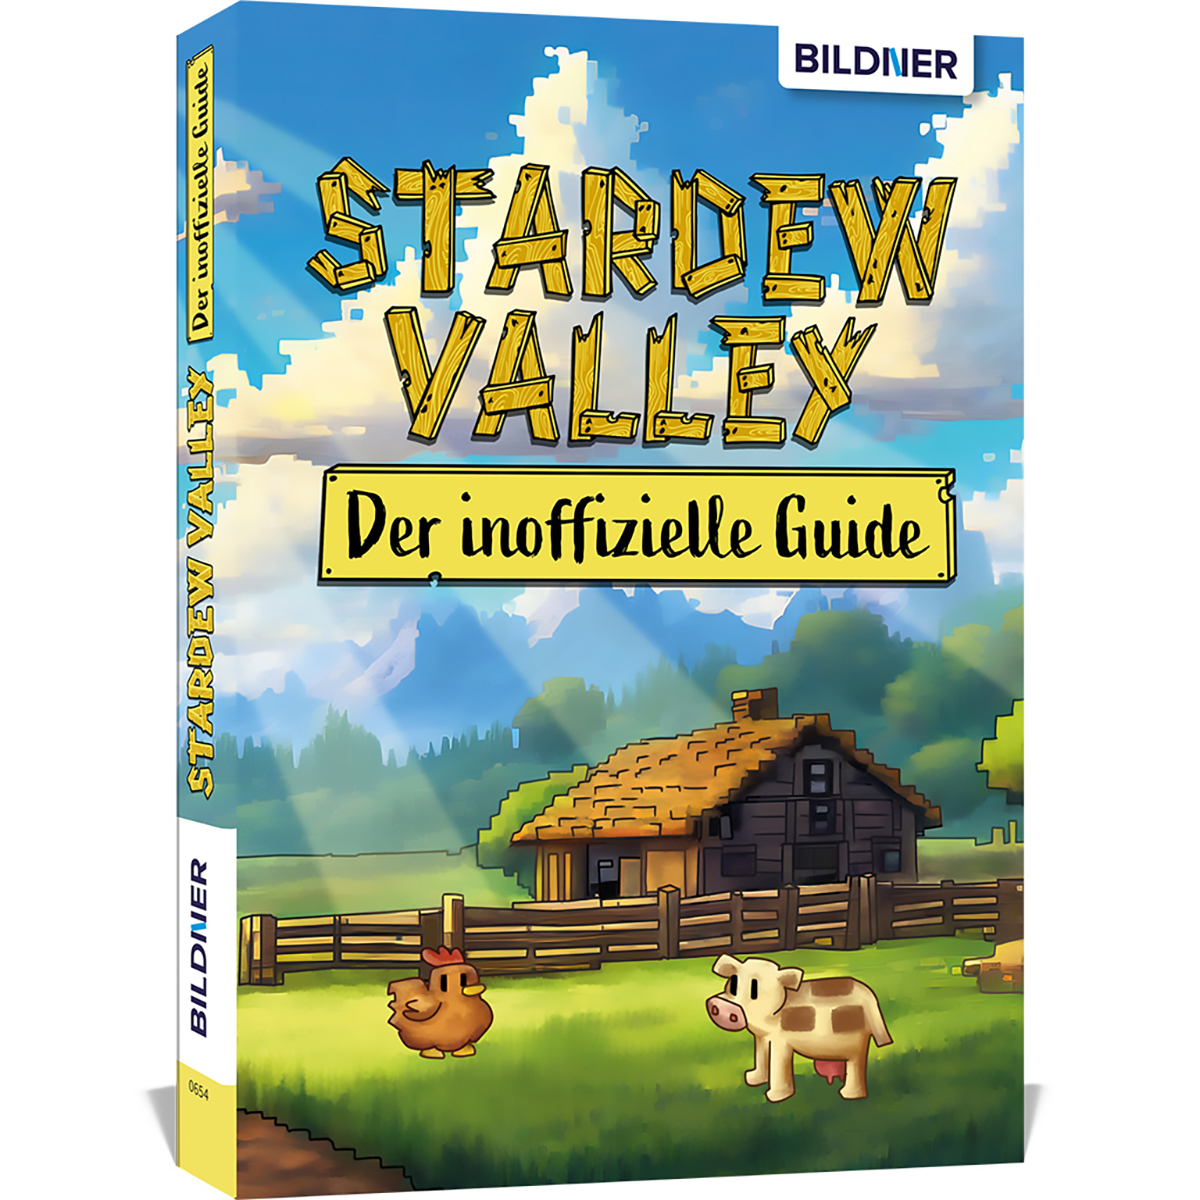 Stardew Valley - Der große inoffizielle Guide